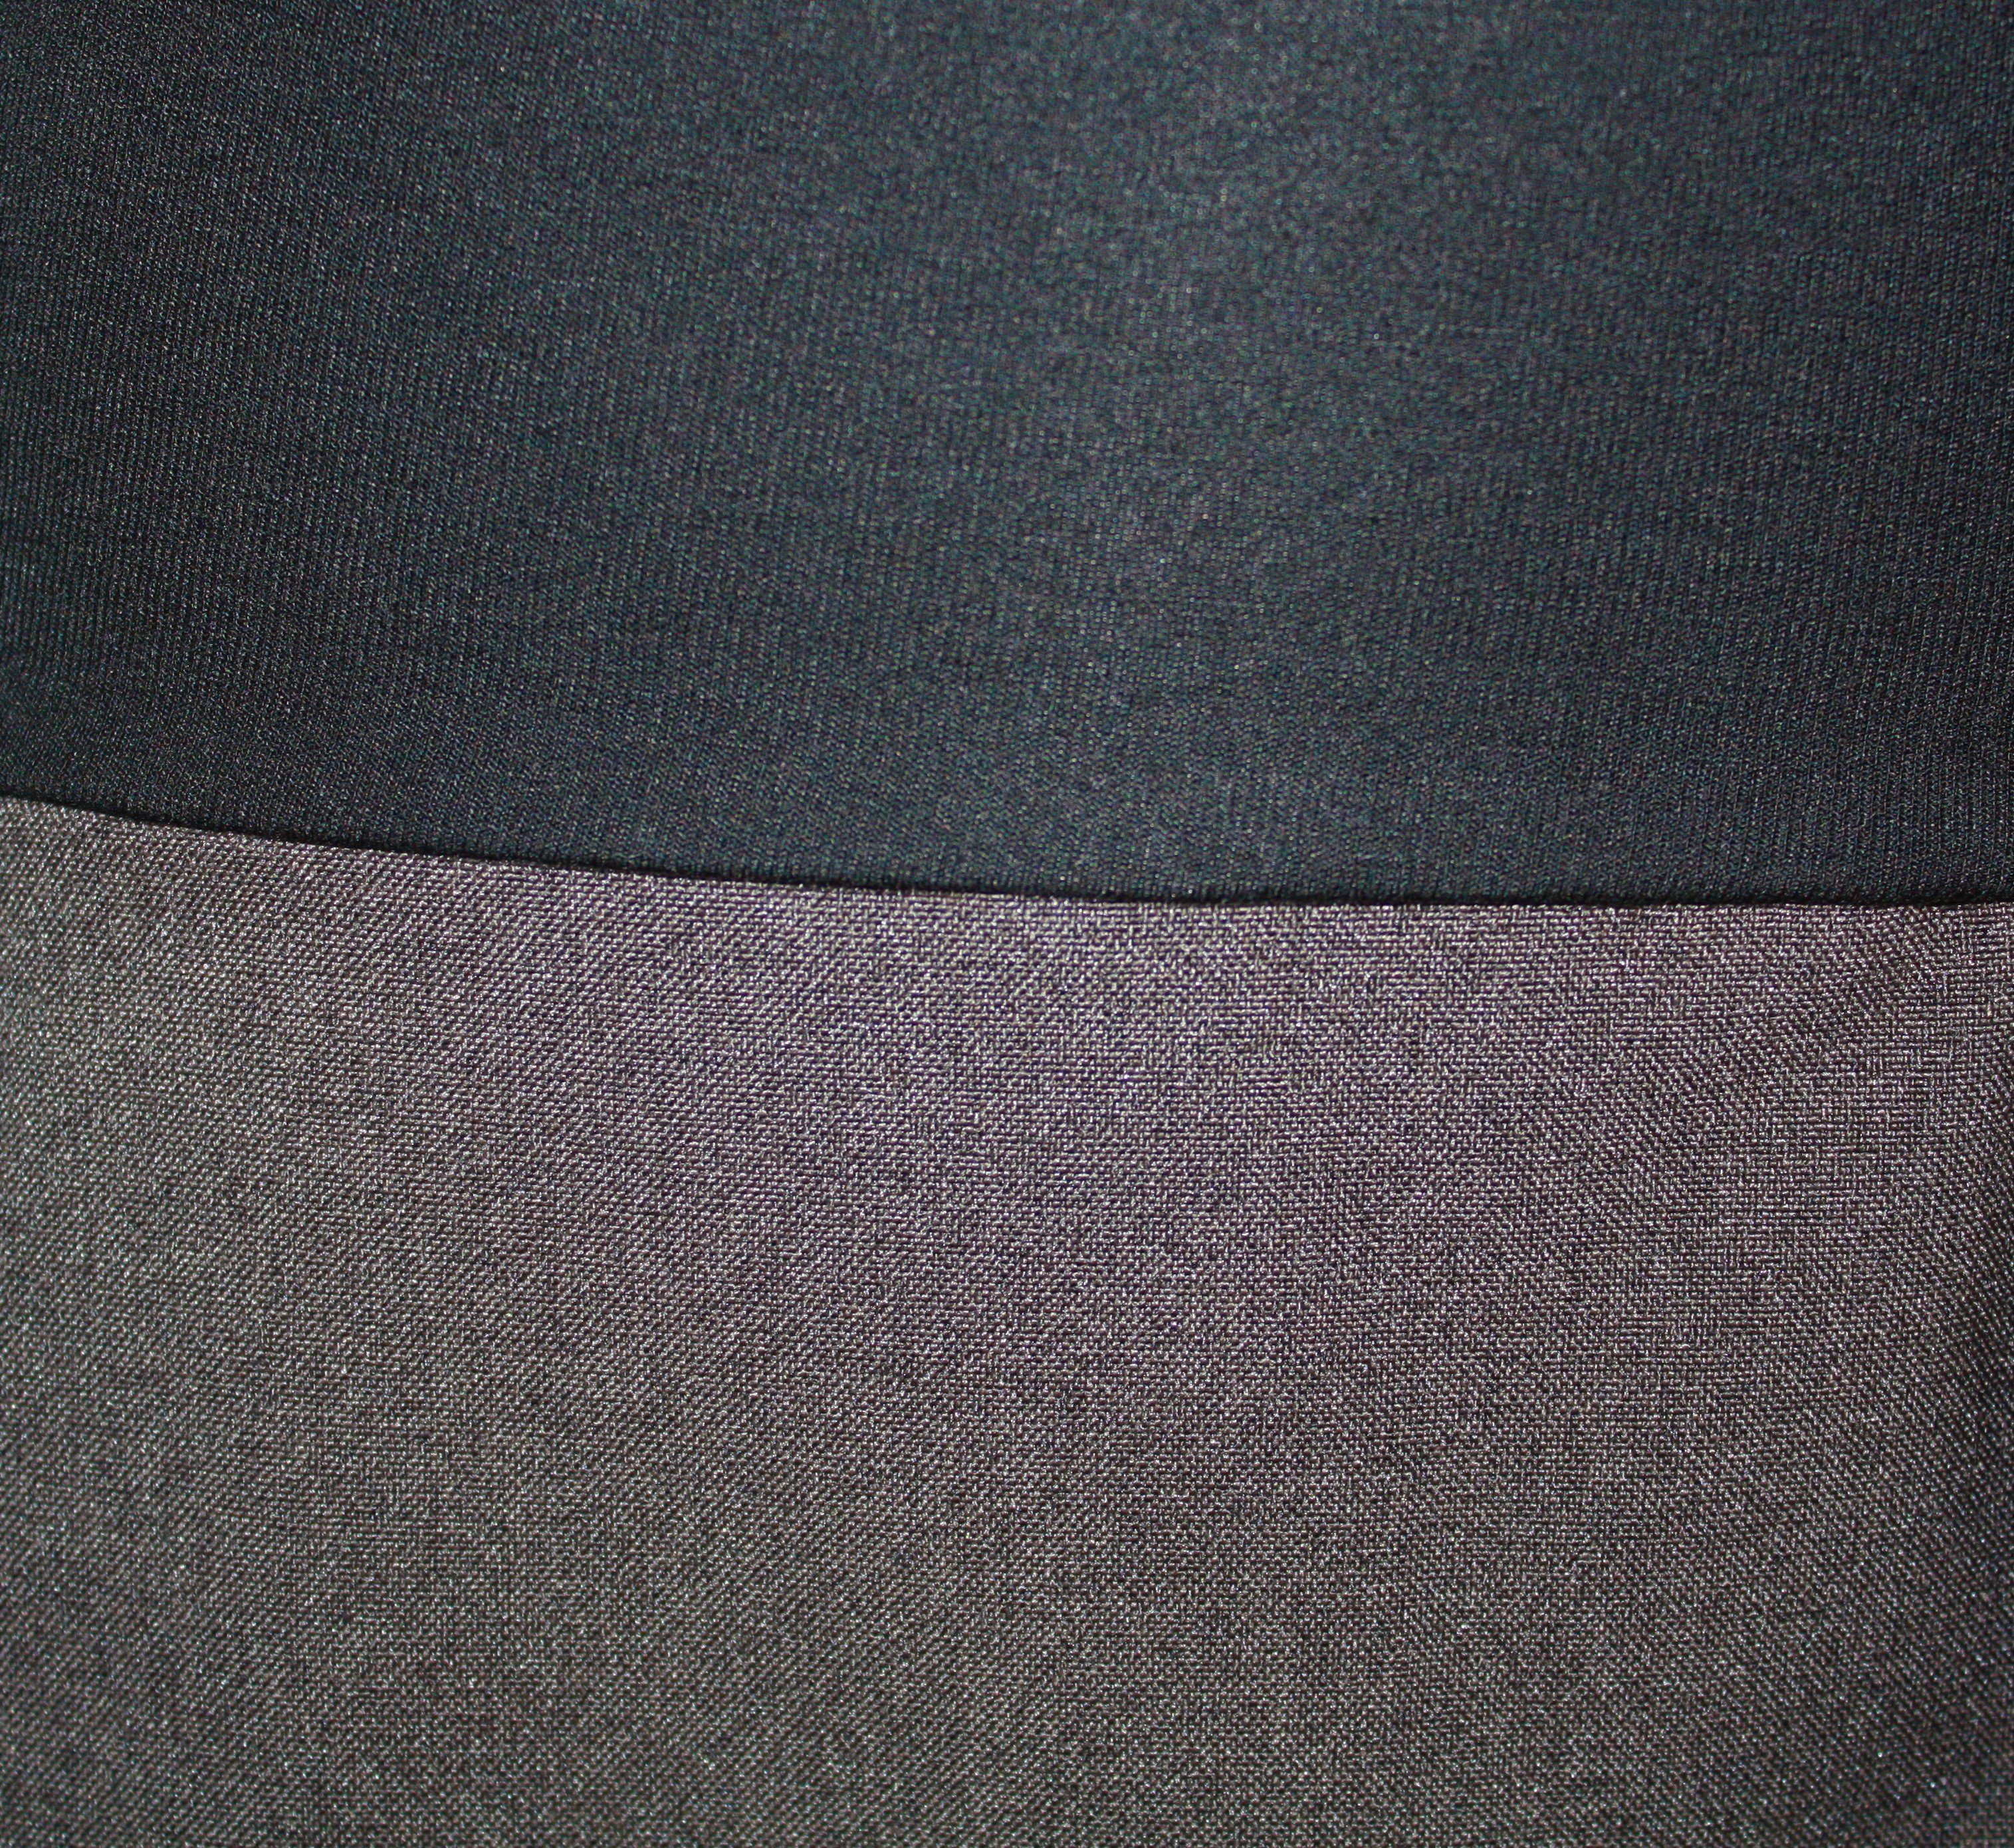 Ballonrock Ecru meliert Grau 65cm Grau Bund dunkle Schwarz Braun elastischer design